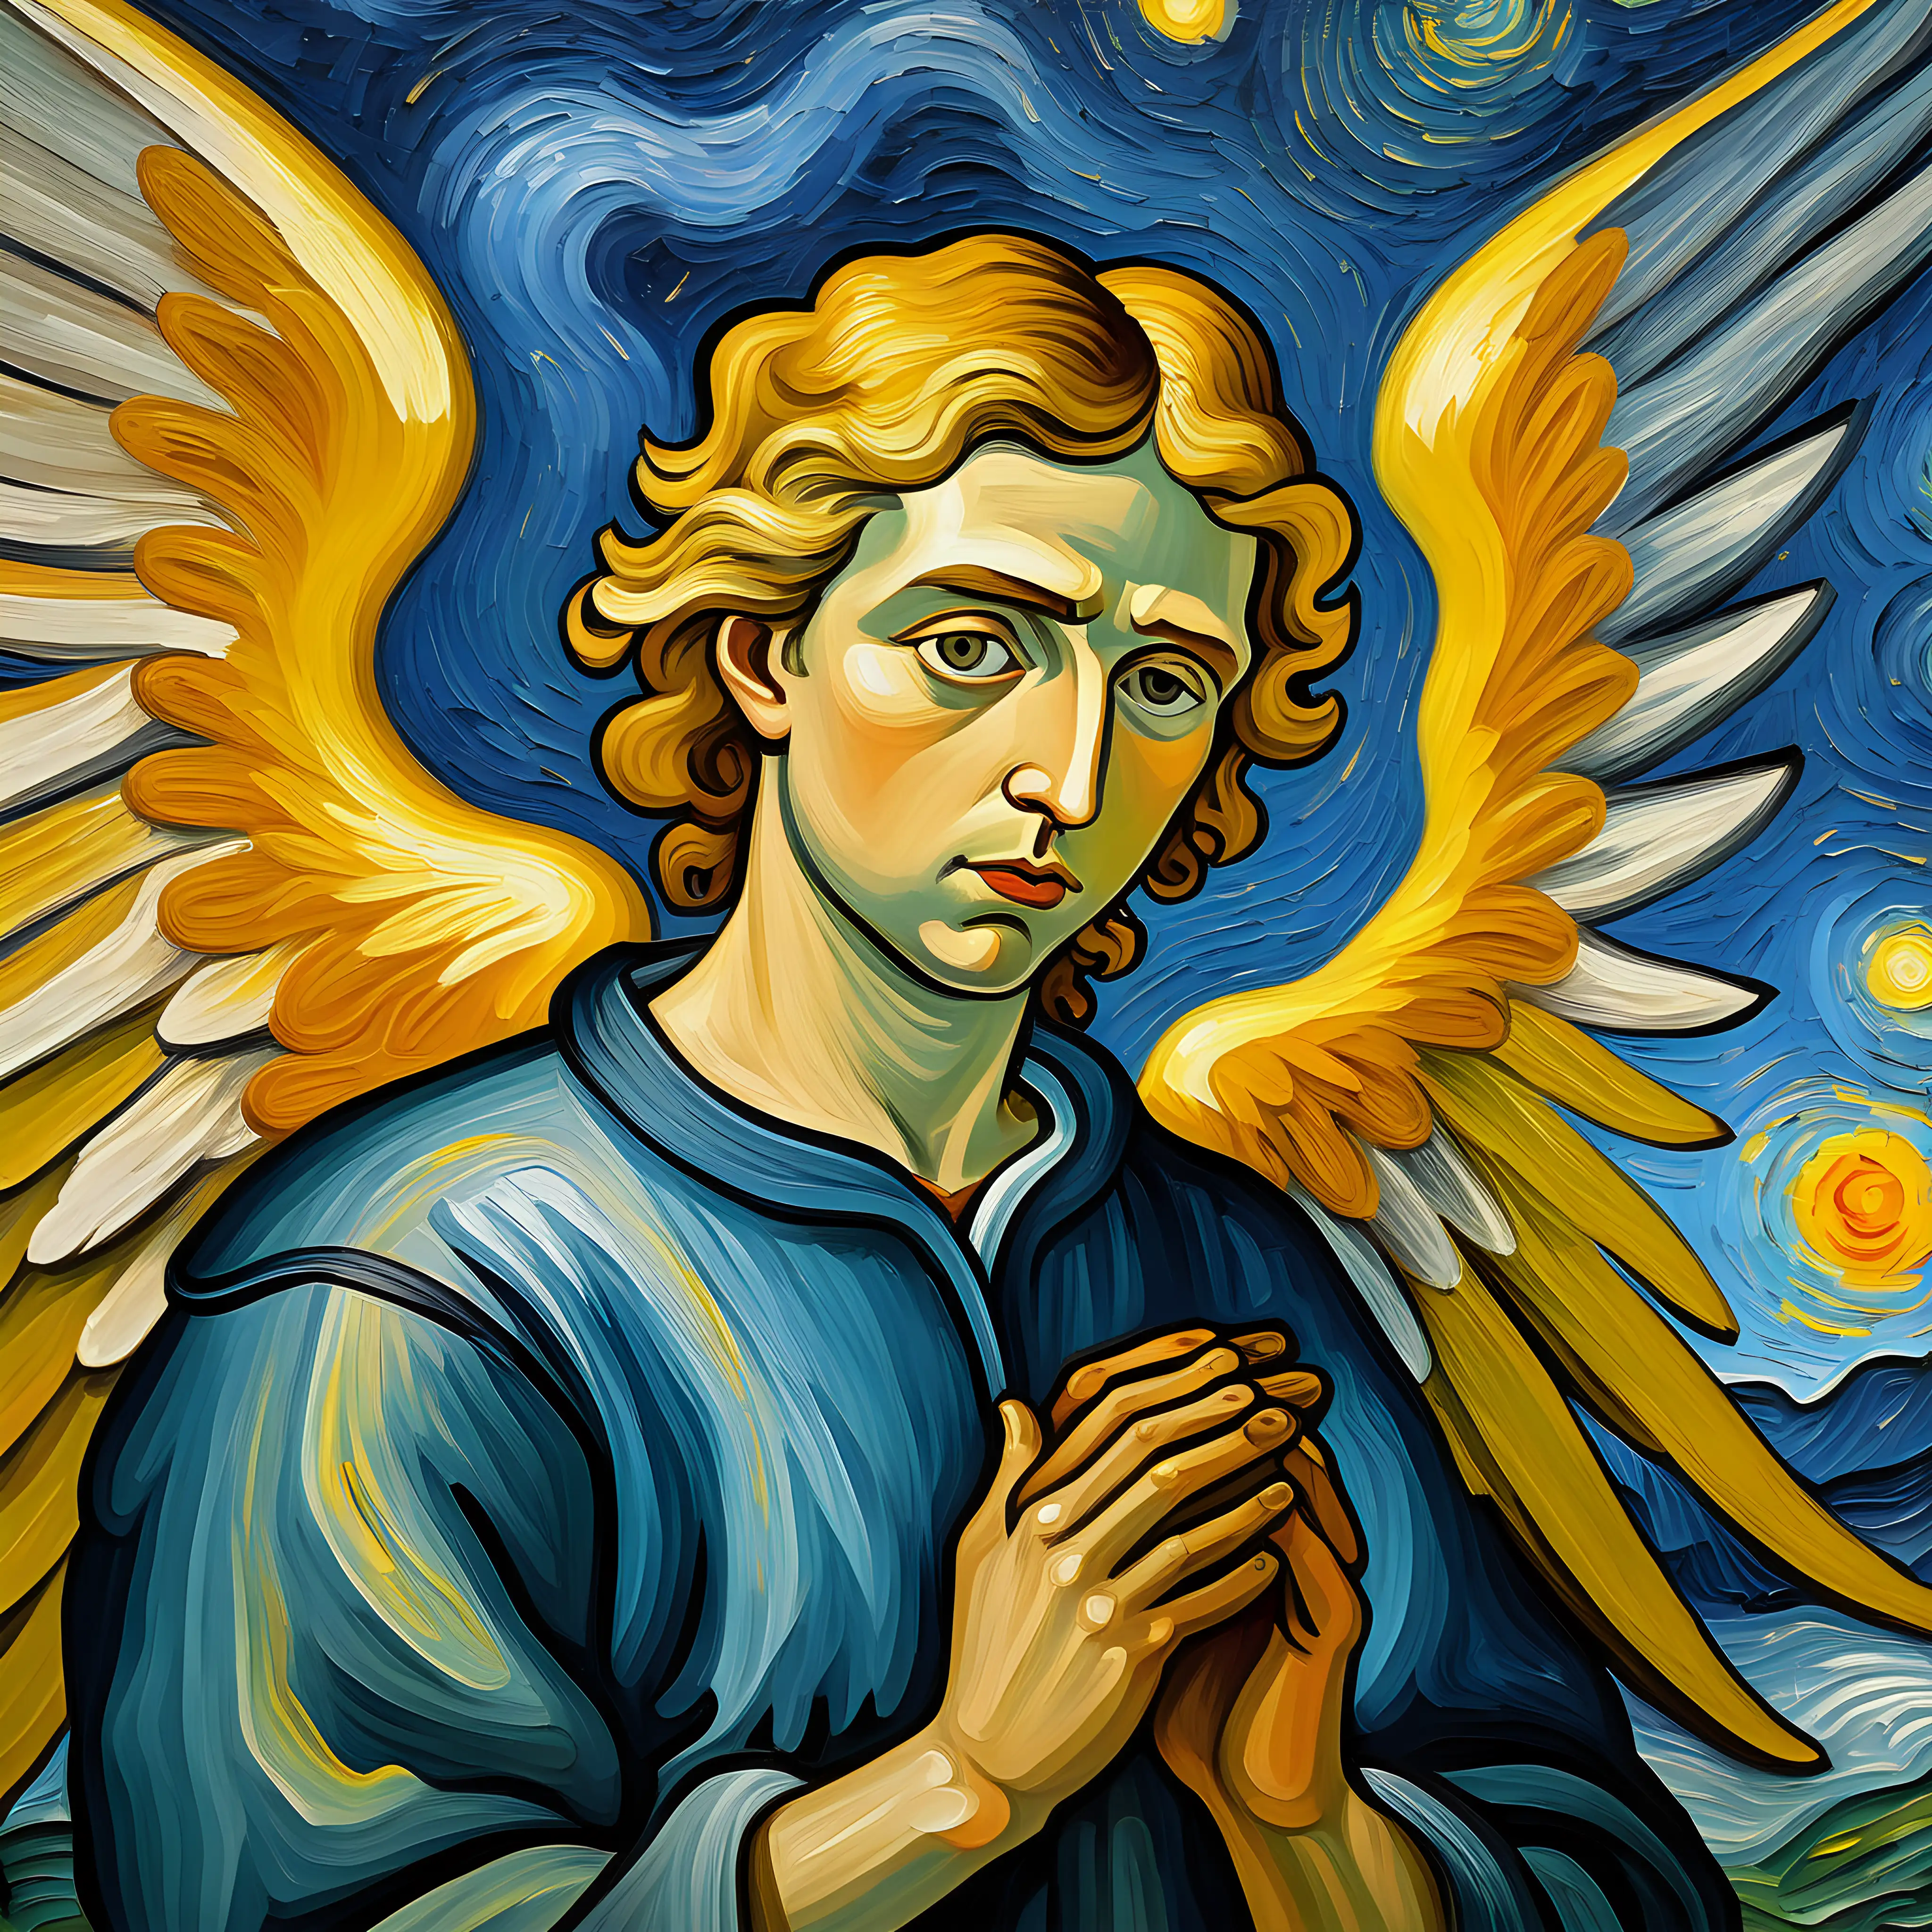 painting in van gough art style of an angel